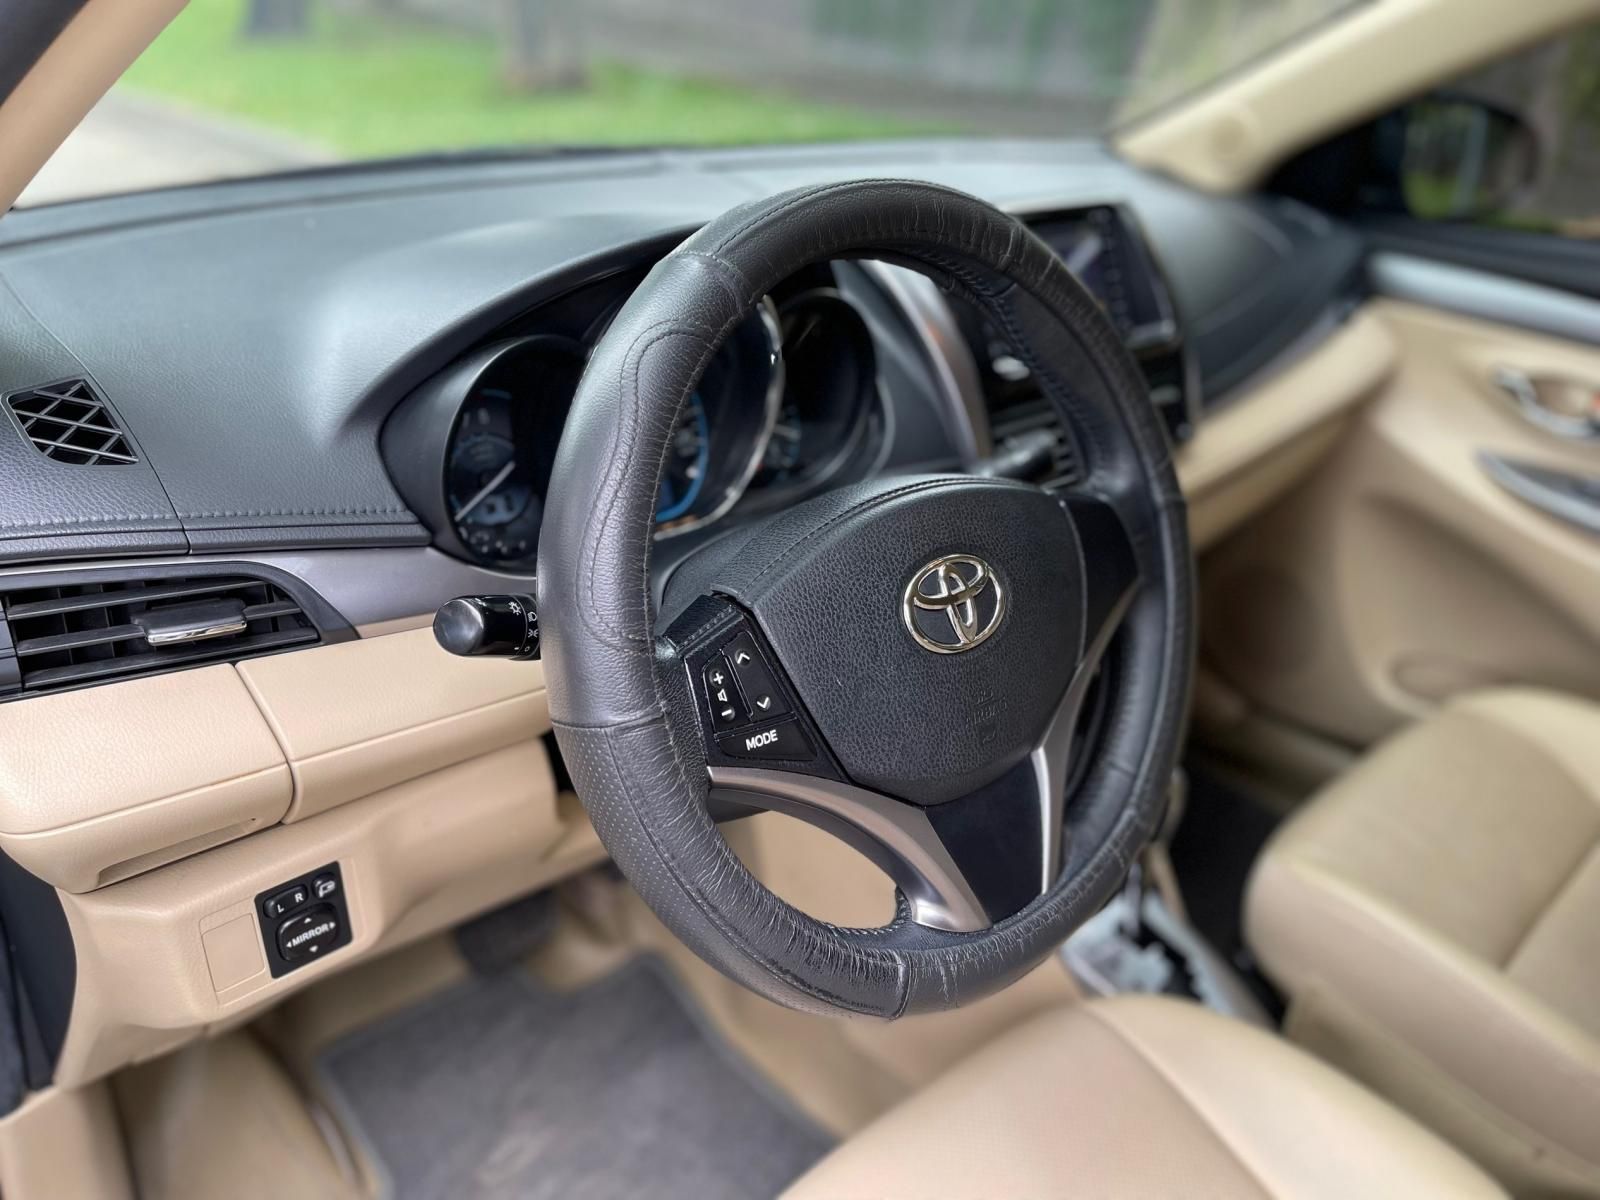 Toyota Vios 2018 - 2018 mua xe được tặng thẻ chăm xe 1 năm